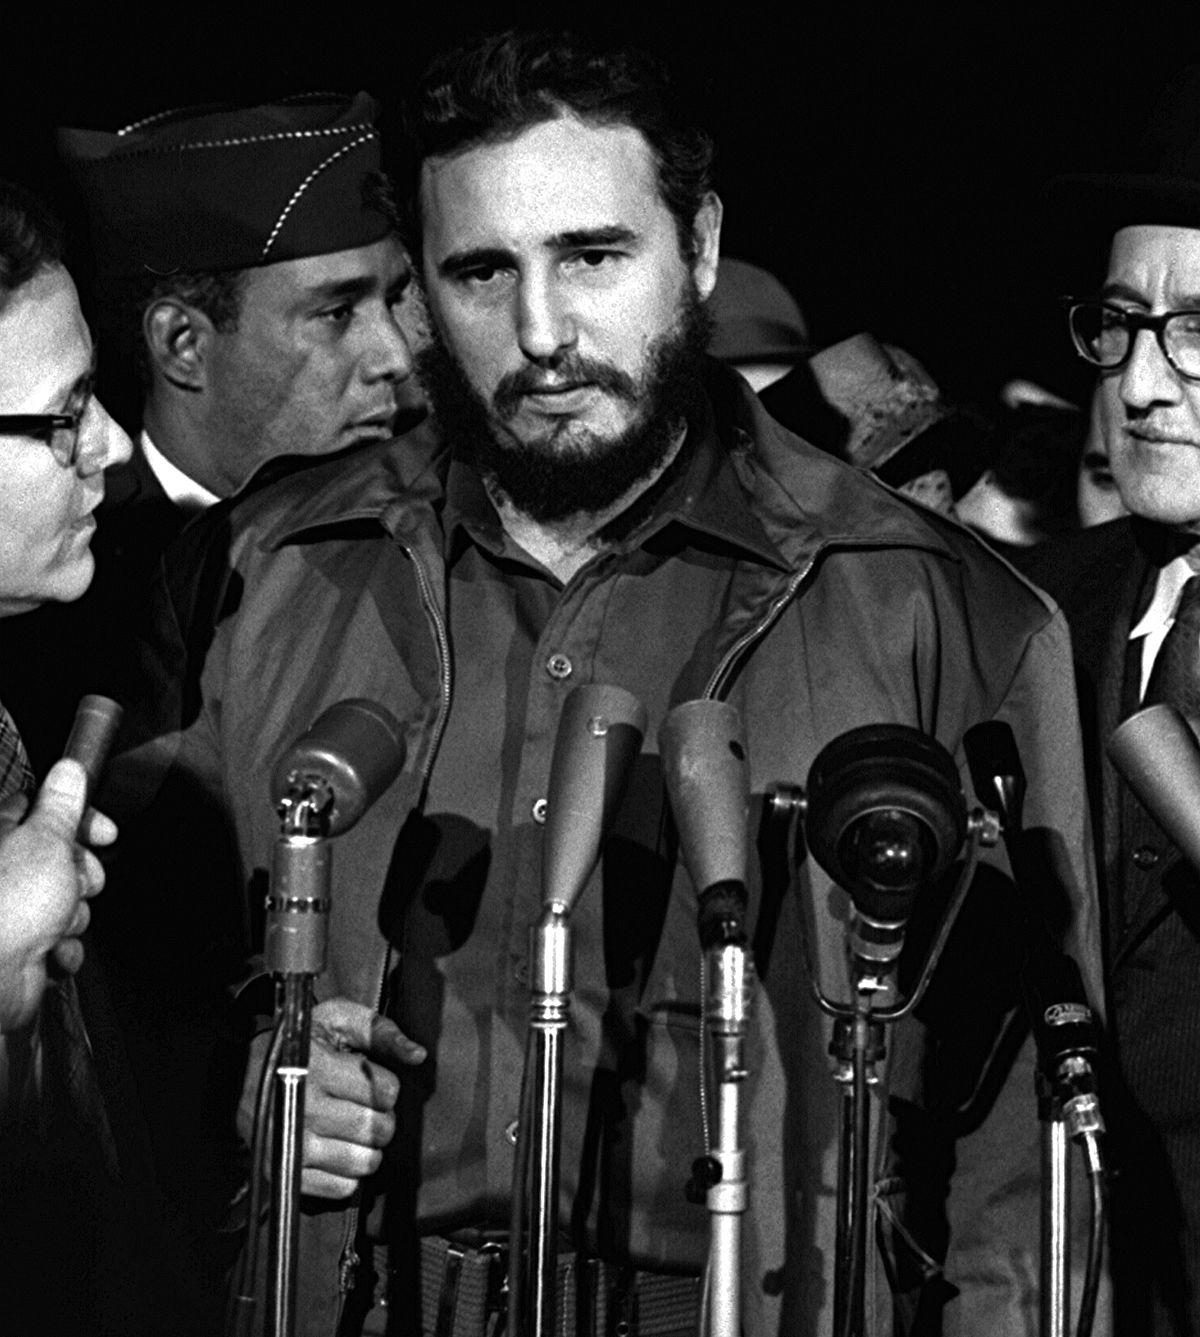 Fidel Castro, kubański komunista, rewolucjonista, wyzwoliciel Kuby (uwolnił ją od krwawej dyktatury proamerykańskiego kapitalisty Batisty) oraz jej przywódca, bohater narodowy Kubańczyków